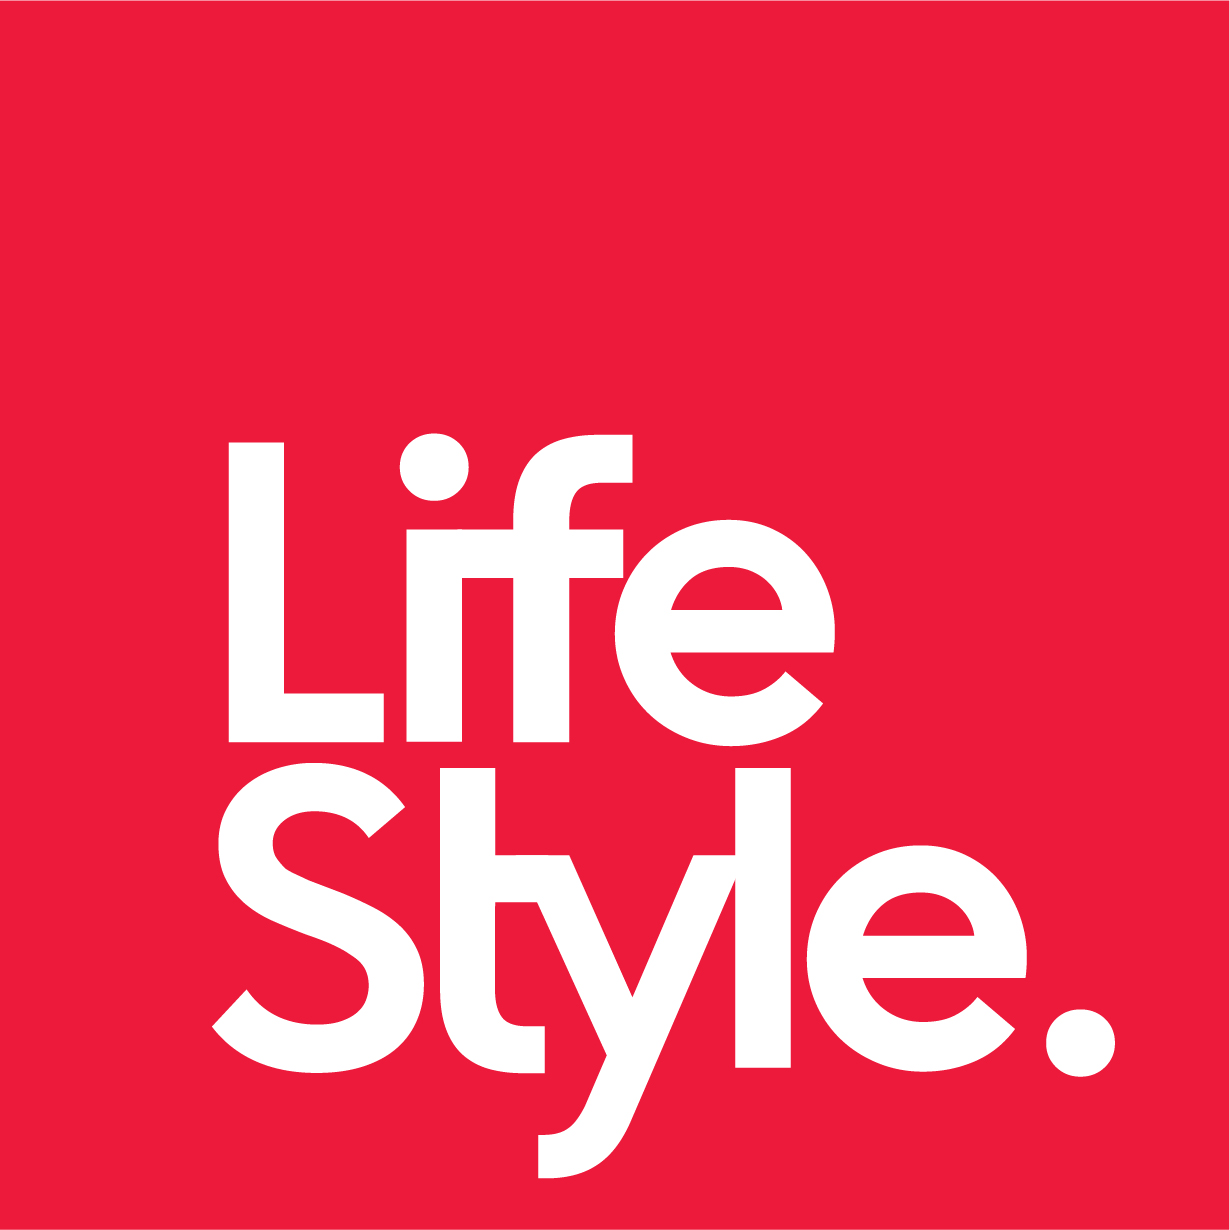 Life Style logo